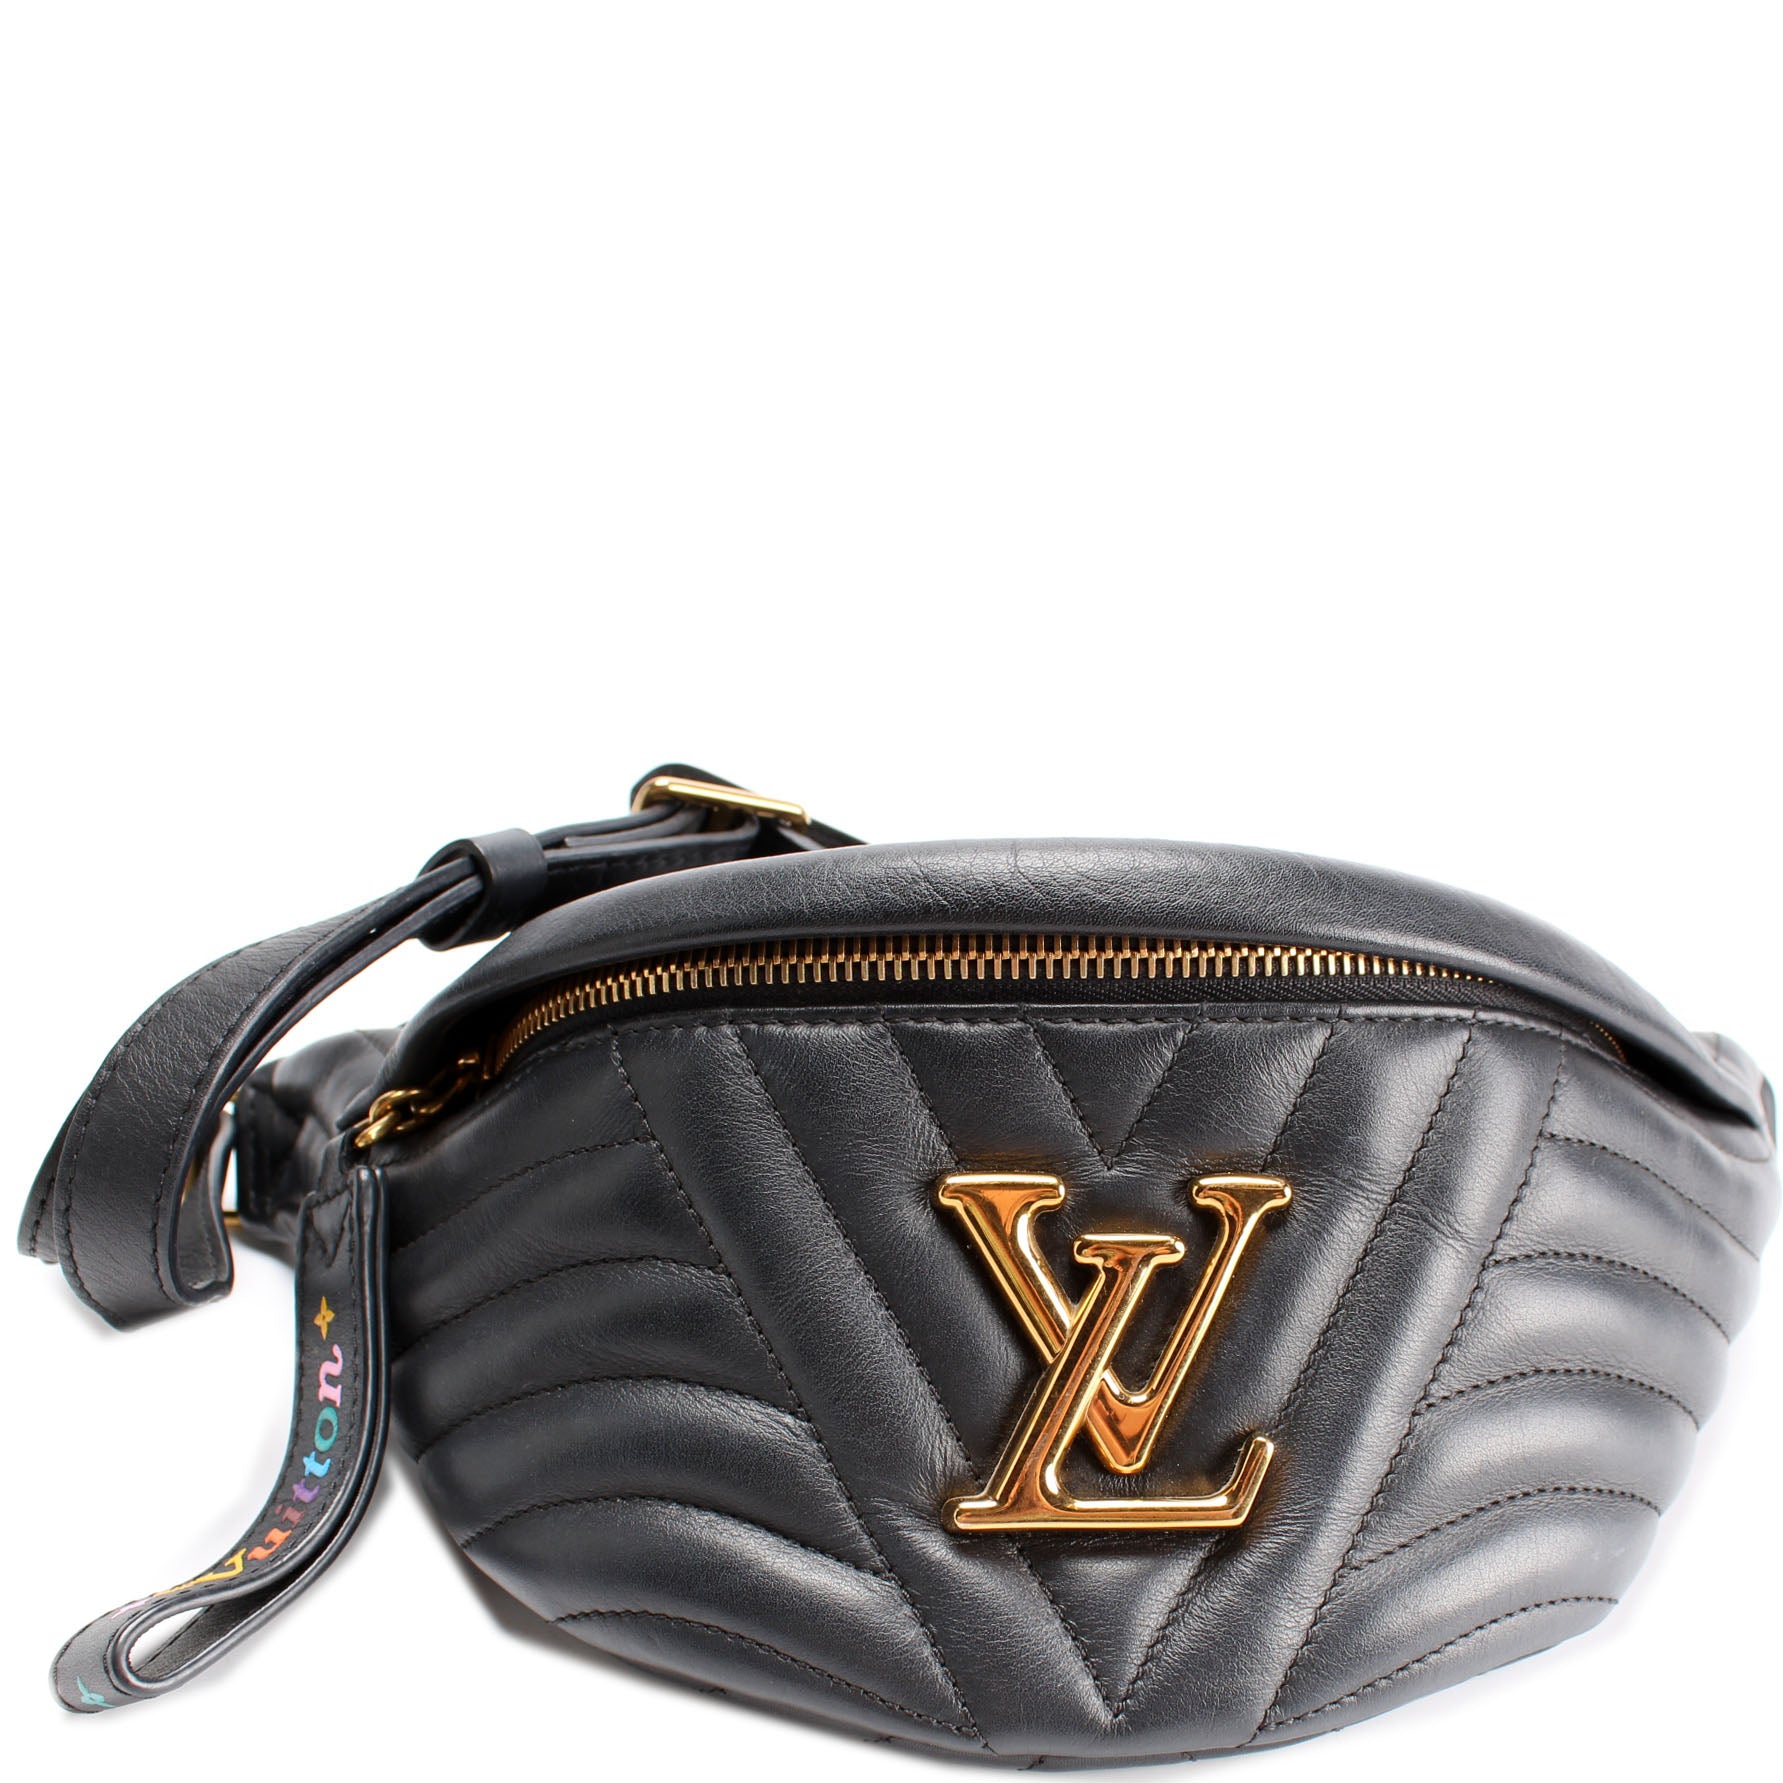 Louis Vuitton New Wave Bum Bag